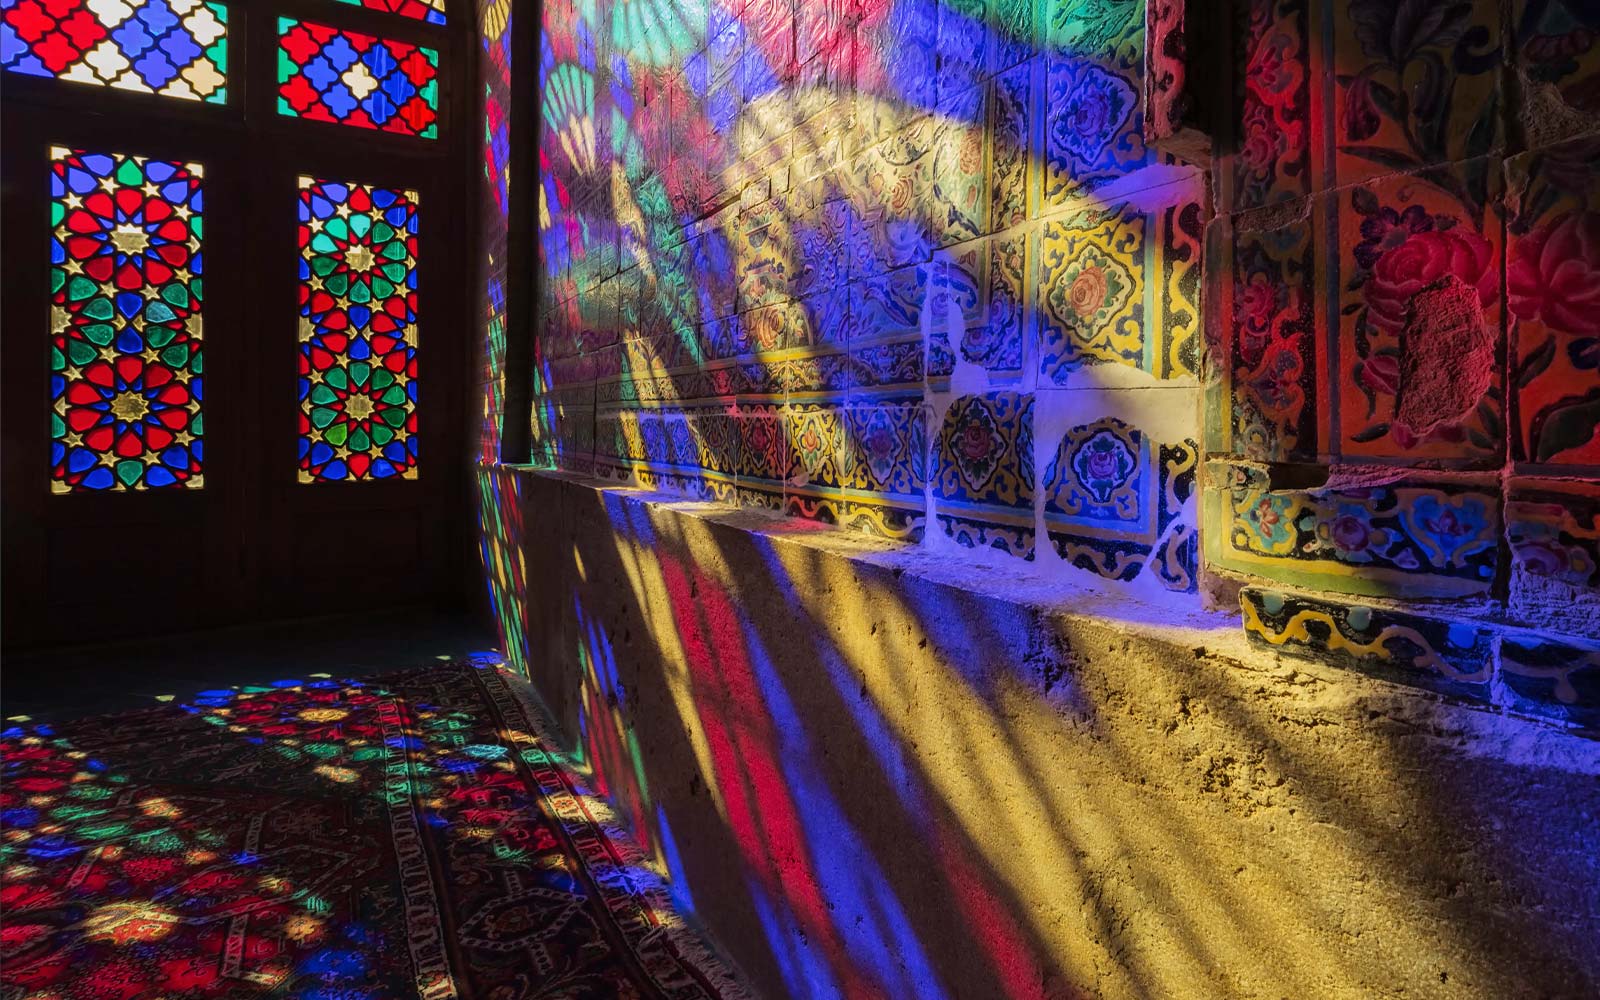 Una scena che mostra la luce che filtra attraverso le finestre di vetro colorato e proietta i colori su una parete (riproduci video).